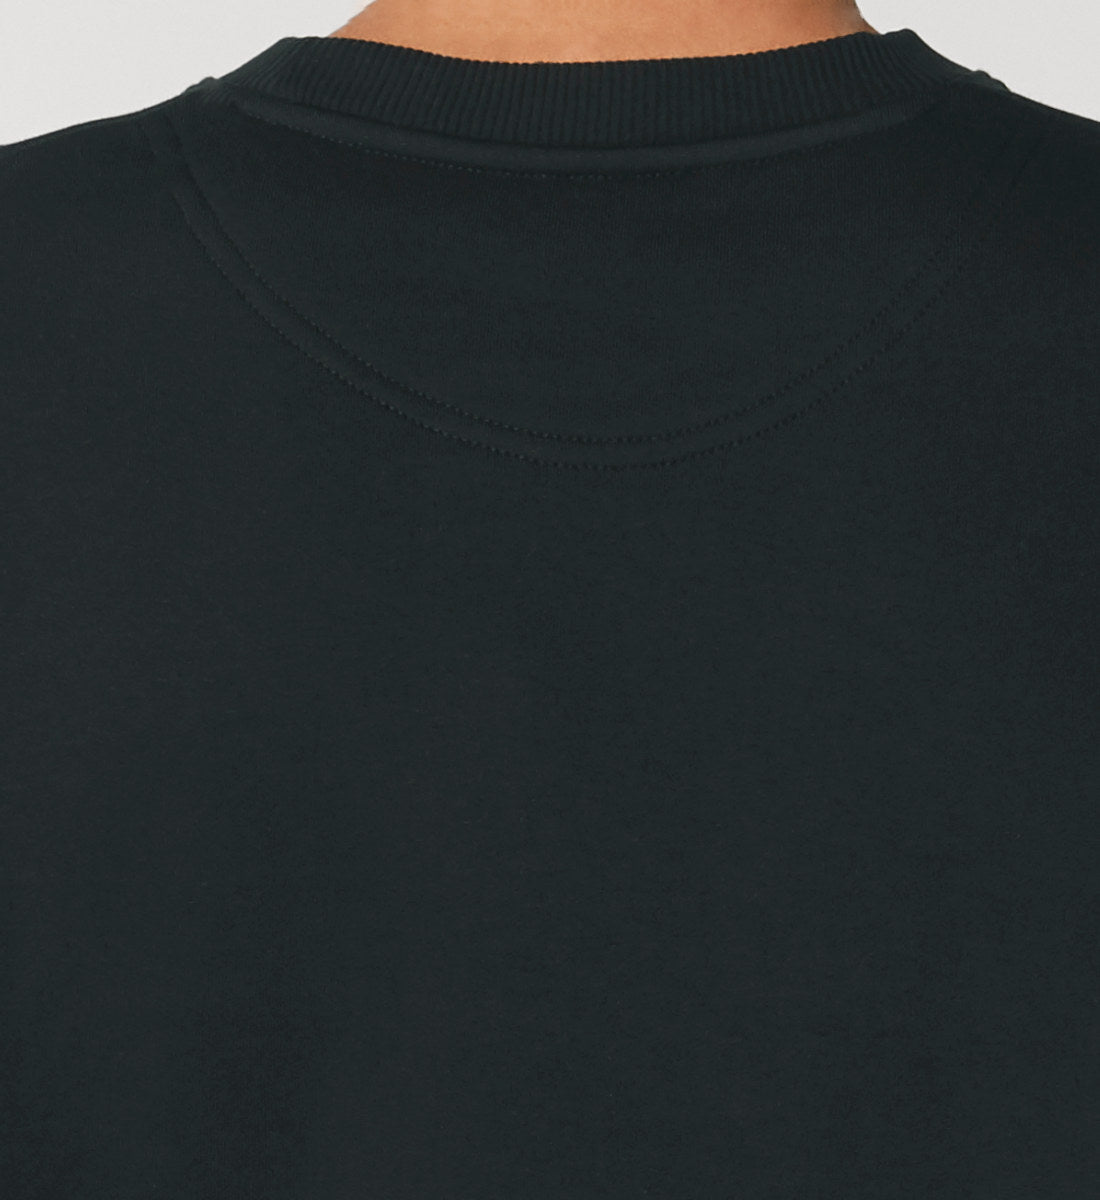 Schwarzes Sweatshirt Unisex für Frauen und Männer bedruckt mit dem Design der Roger Rockawoo Kollektion Rockawoo Community Icons